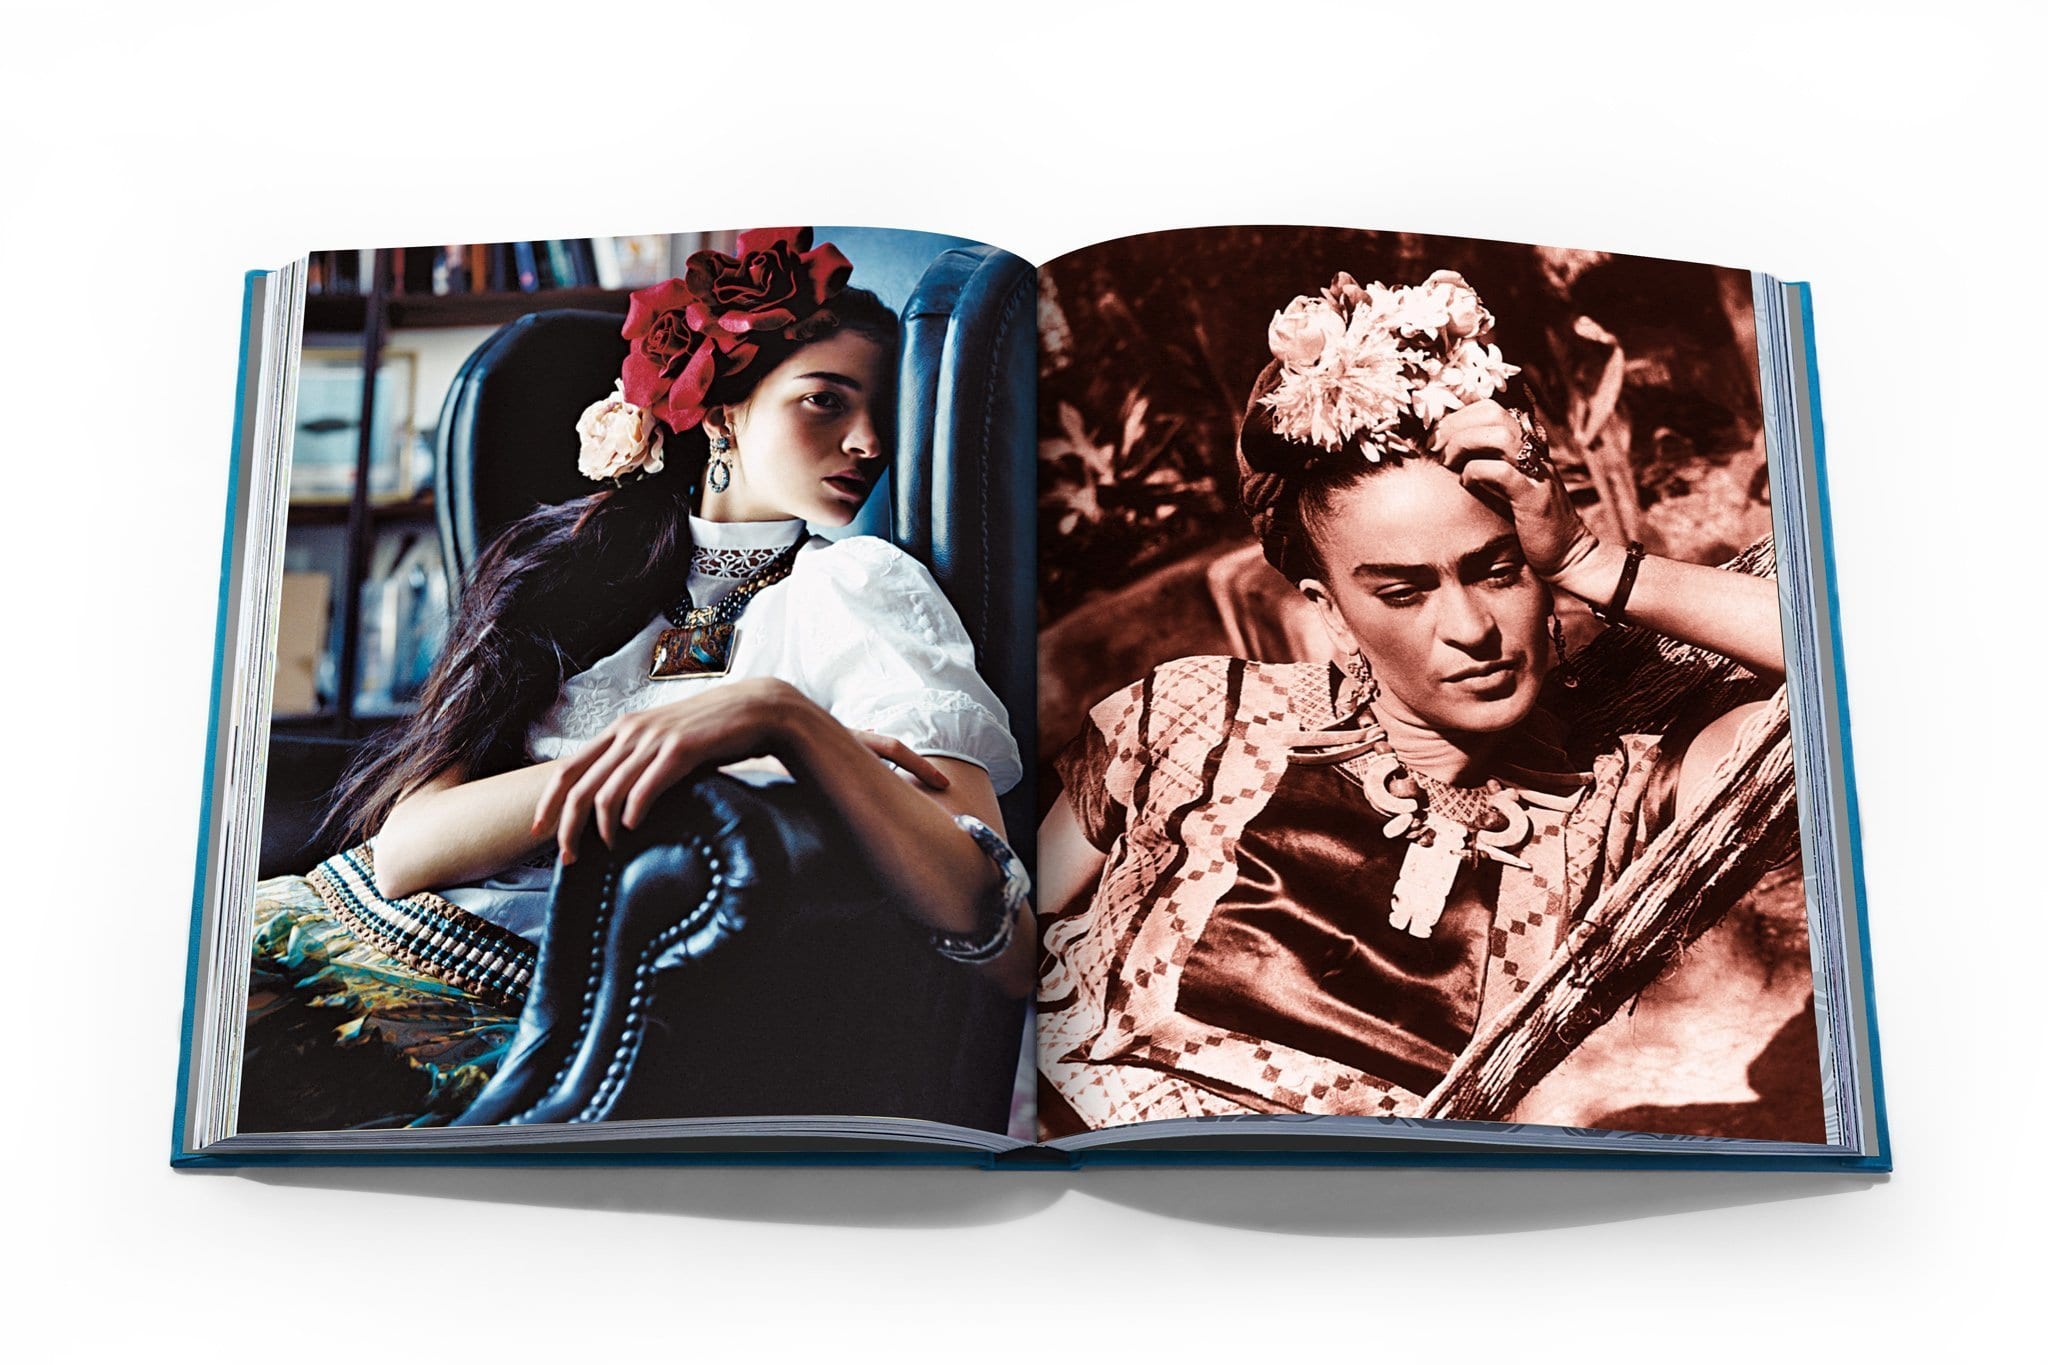 Assouline Frida Kahlo : La mode comme art d'être